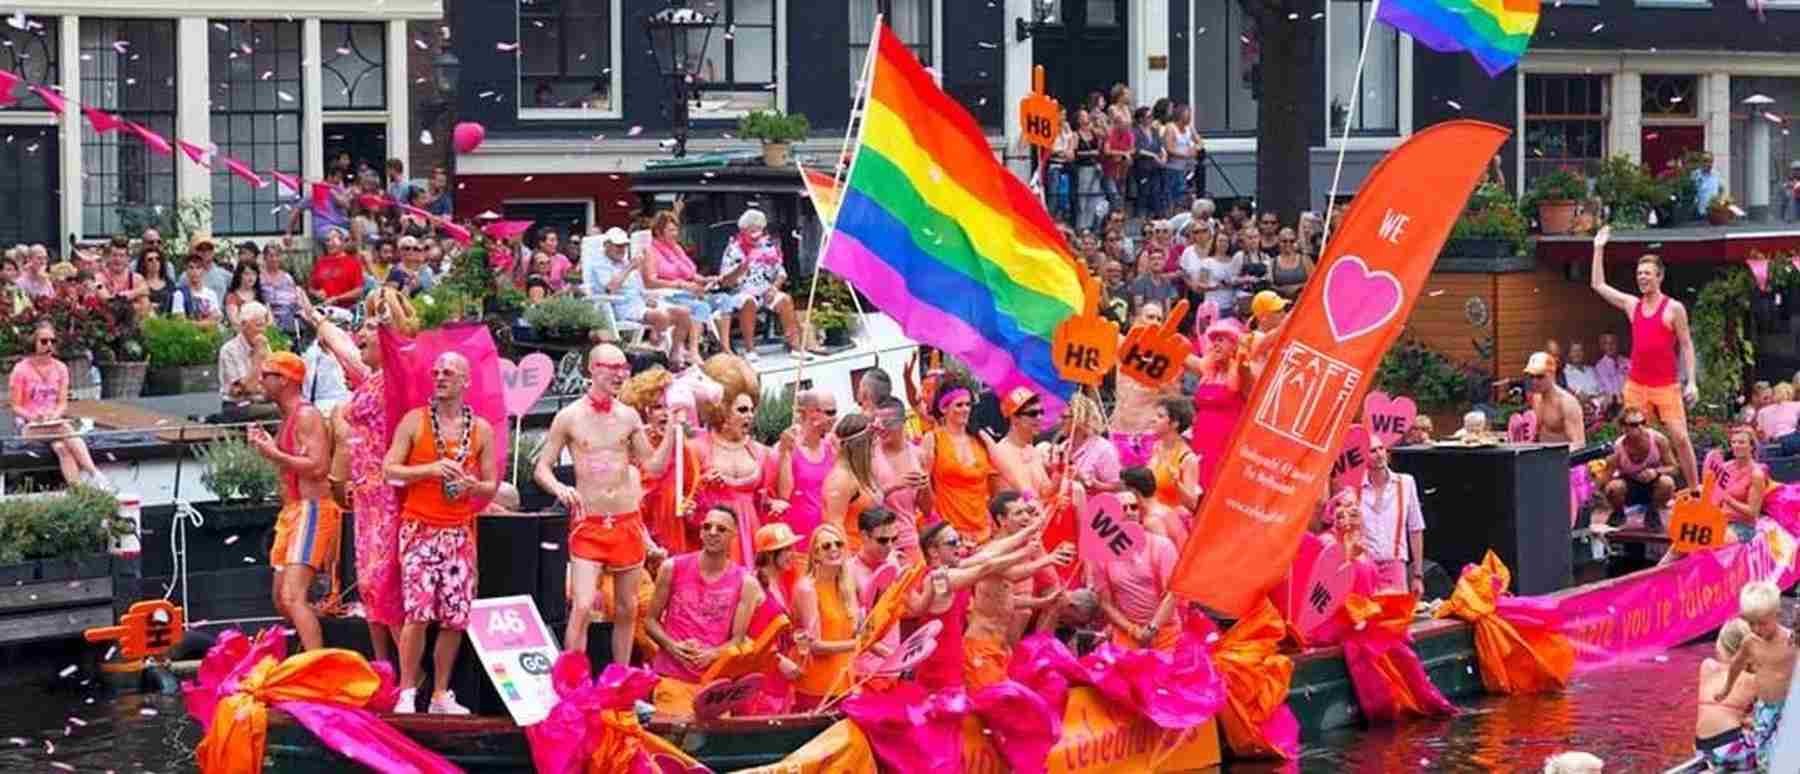 De ultieme gids om te besparen tijdens Pride Amsterdam